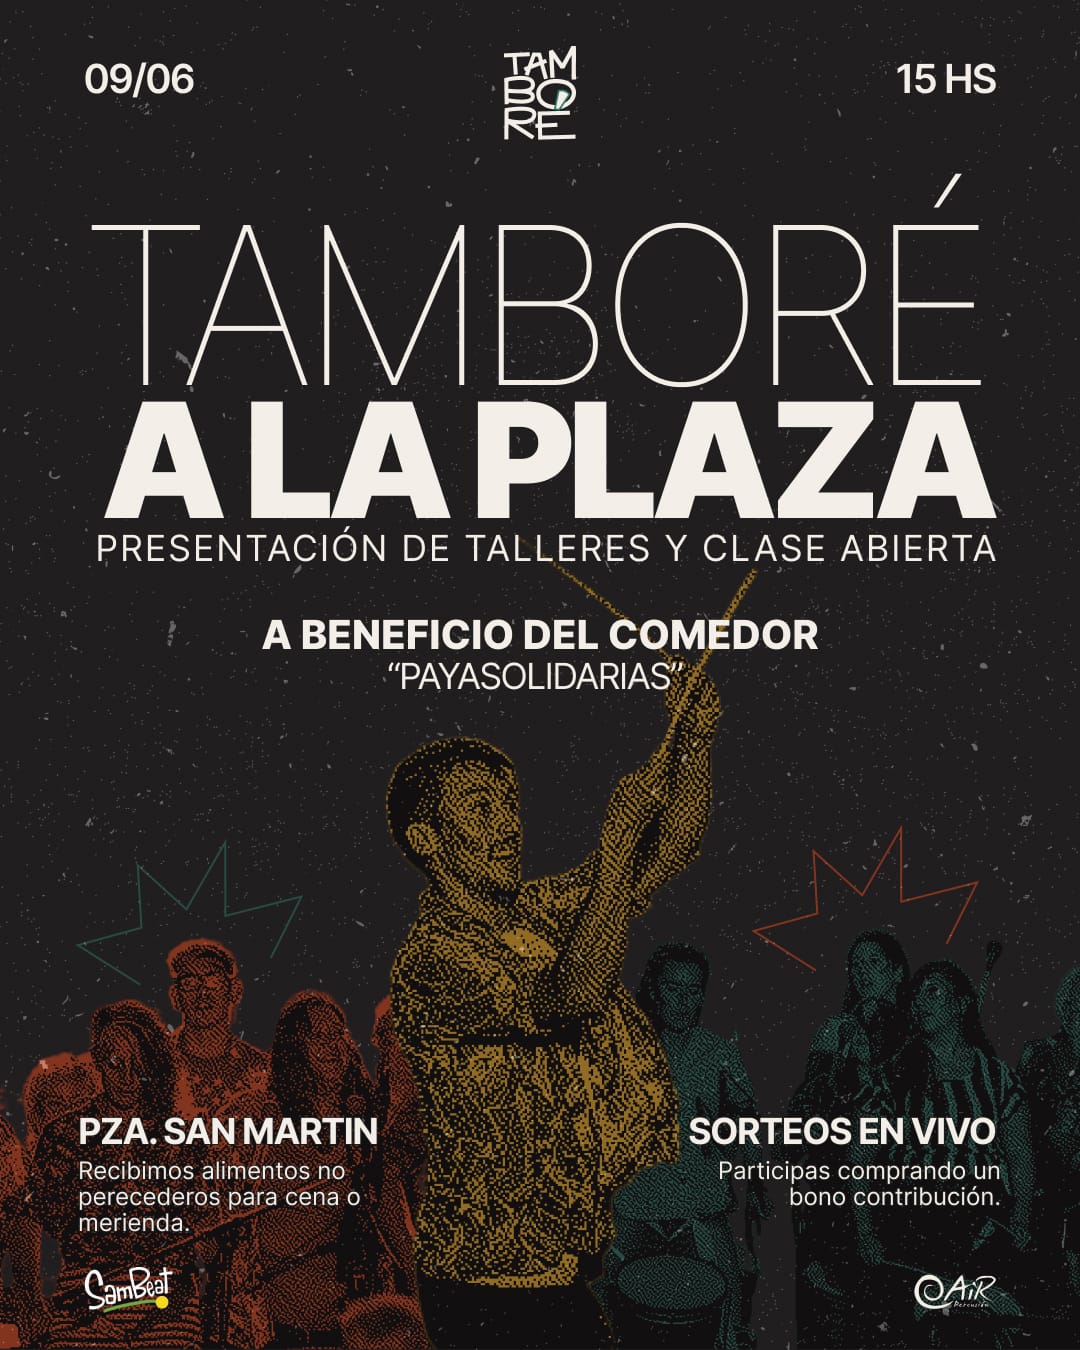 El 9 de junio Tamboré copa la Plaza San Martín